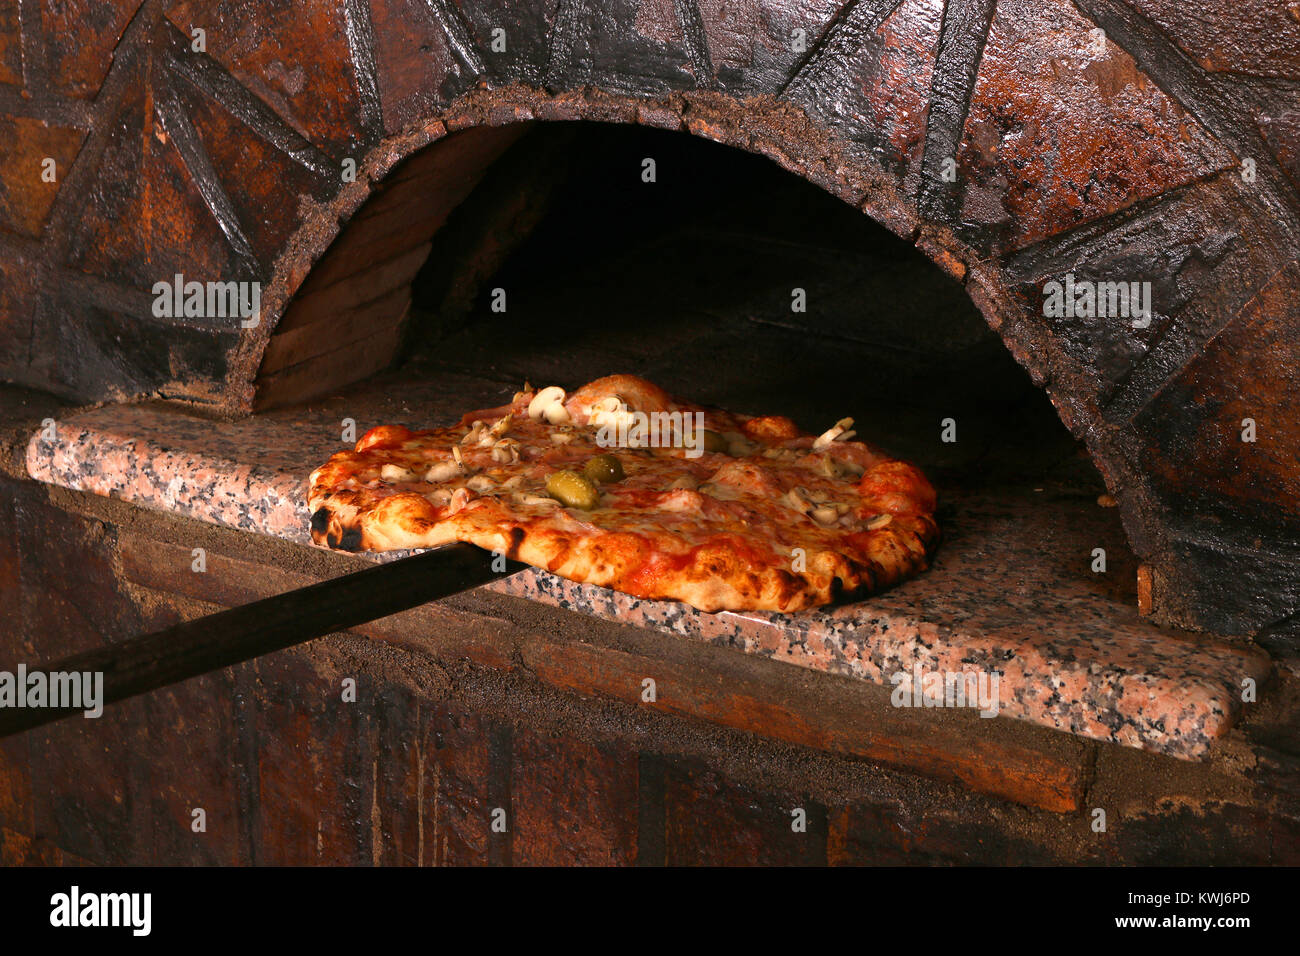 delicious pizza and brick oven pizzeria Stock Photo